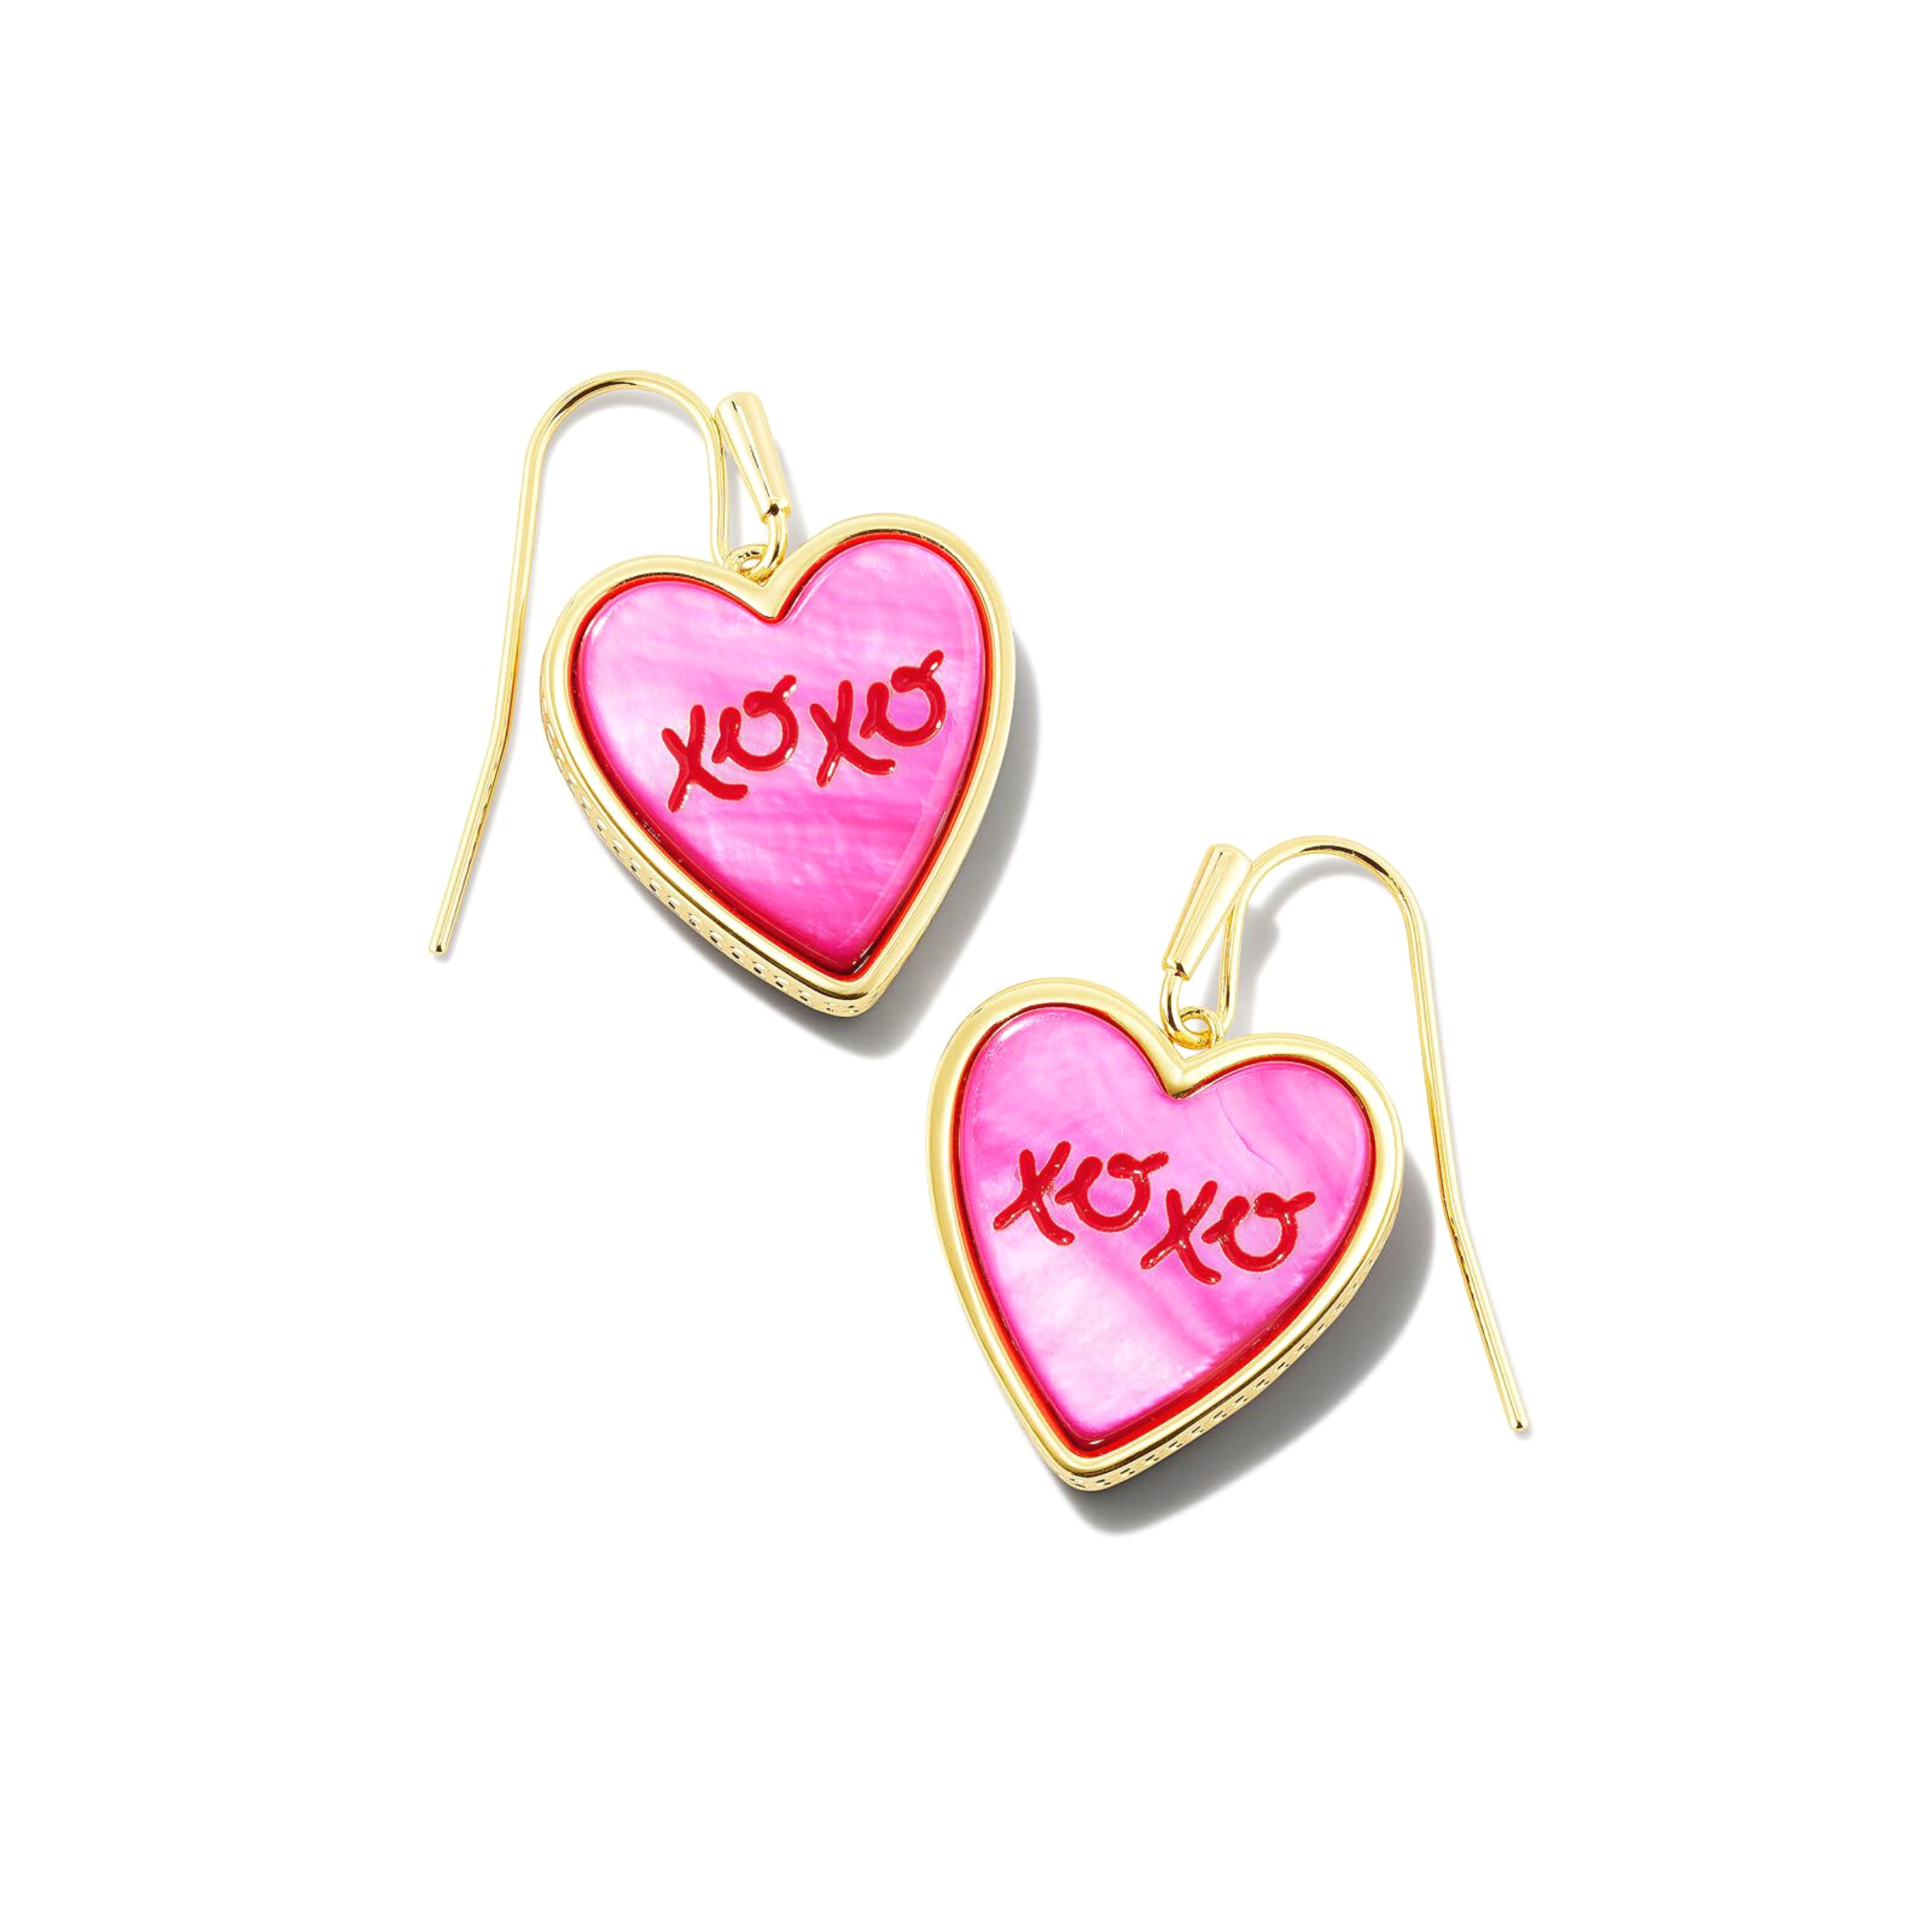 Kendra Scott Valentine's Day Necklace | www.kurrebo.com